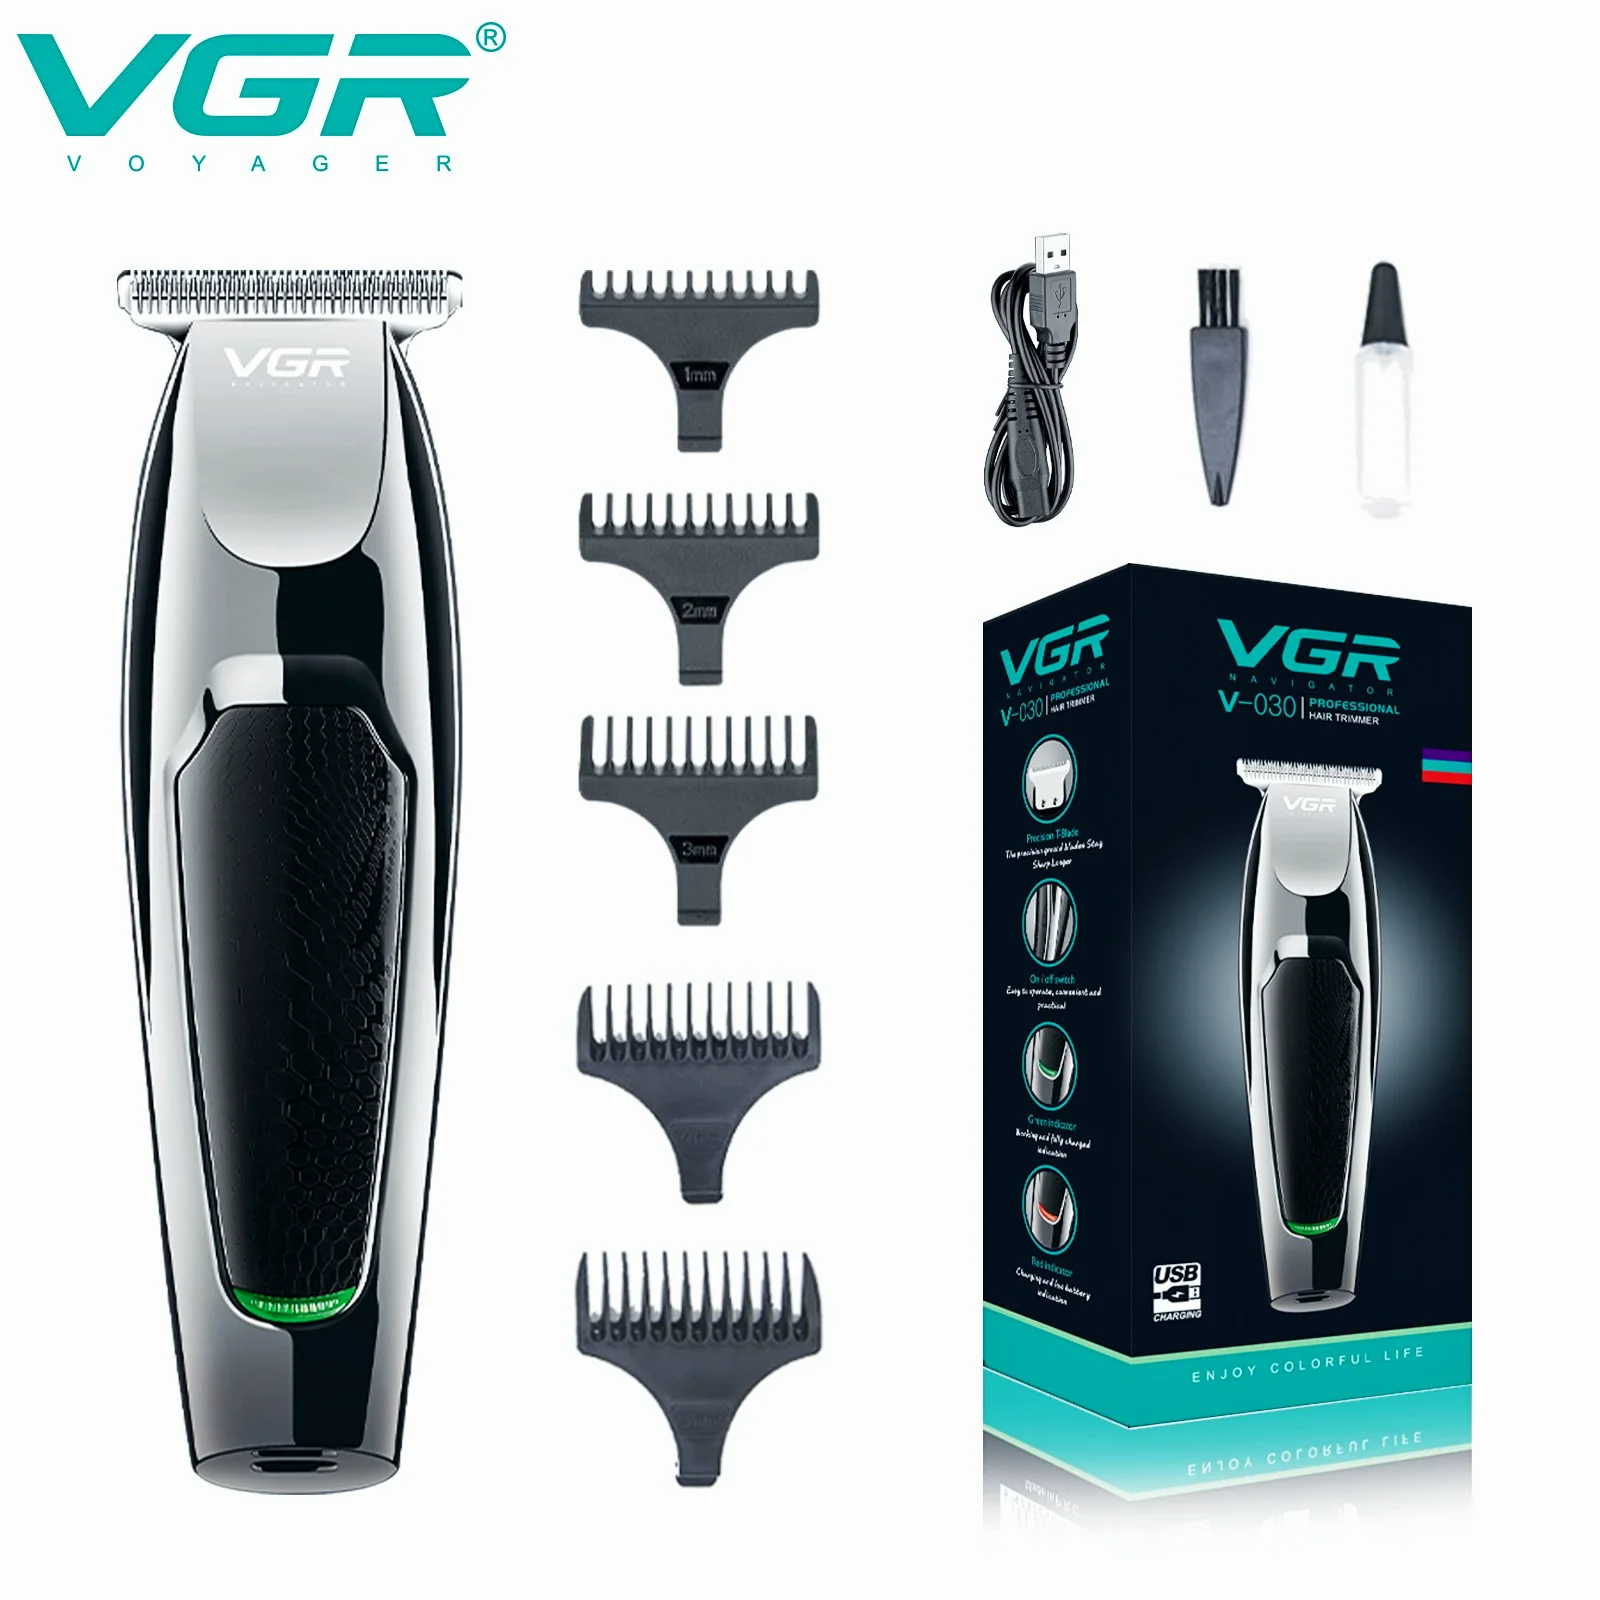 VGR Maquina de cortar pelo Cortadora de cabello eléctrica Máquina de corte de pelo profesional peluquero calvo Carga USB Cortapelos para hombres V-030